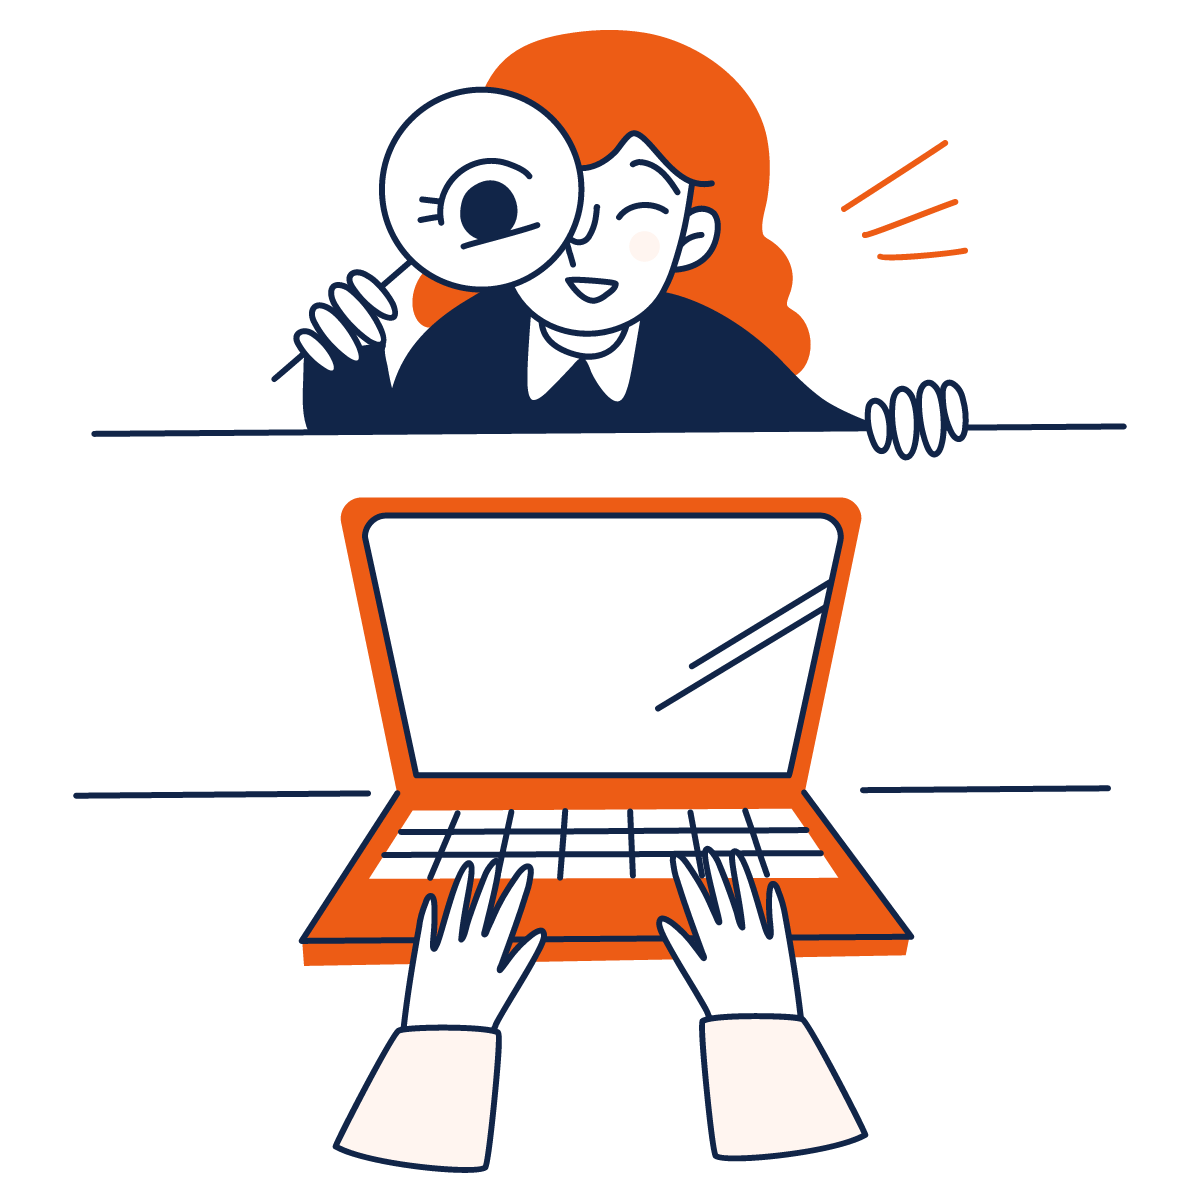 een illustratie van een vrouw die met een loep kijkt naar een laptop waarop iemand iets typt.